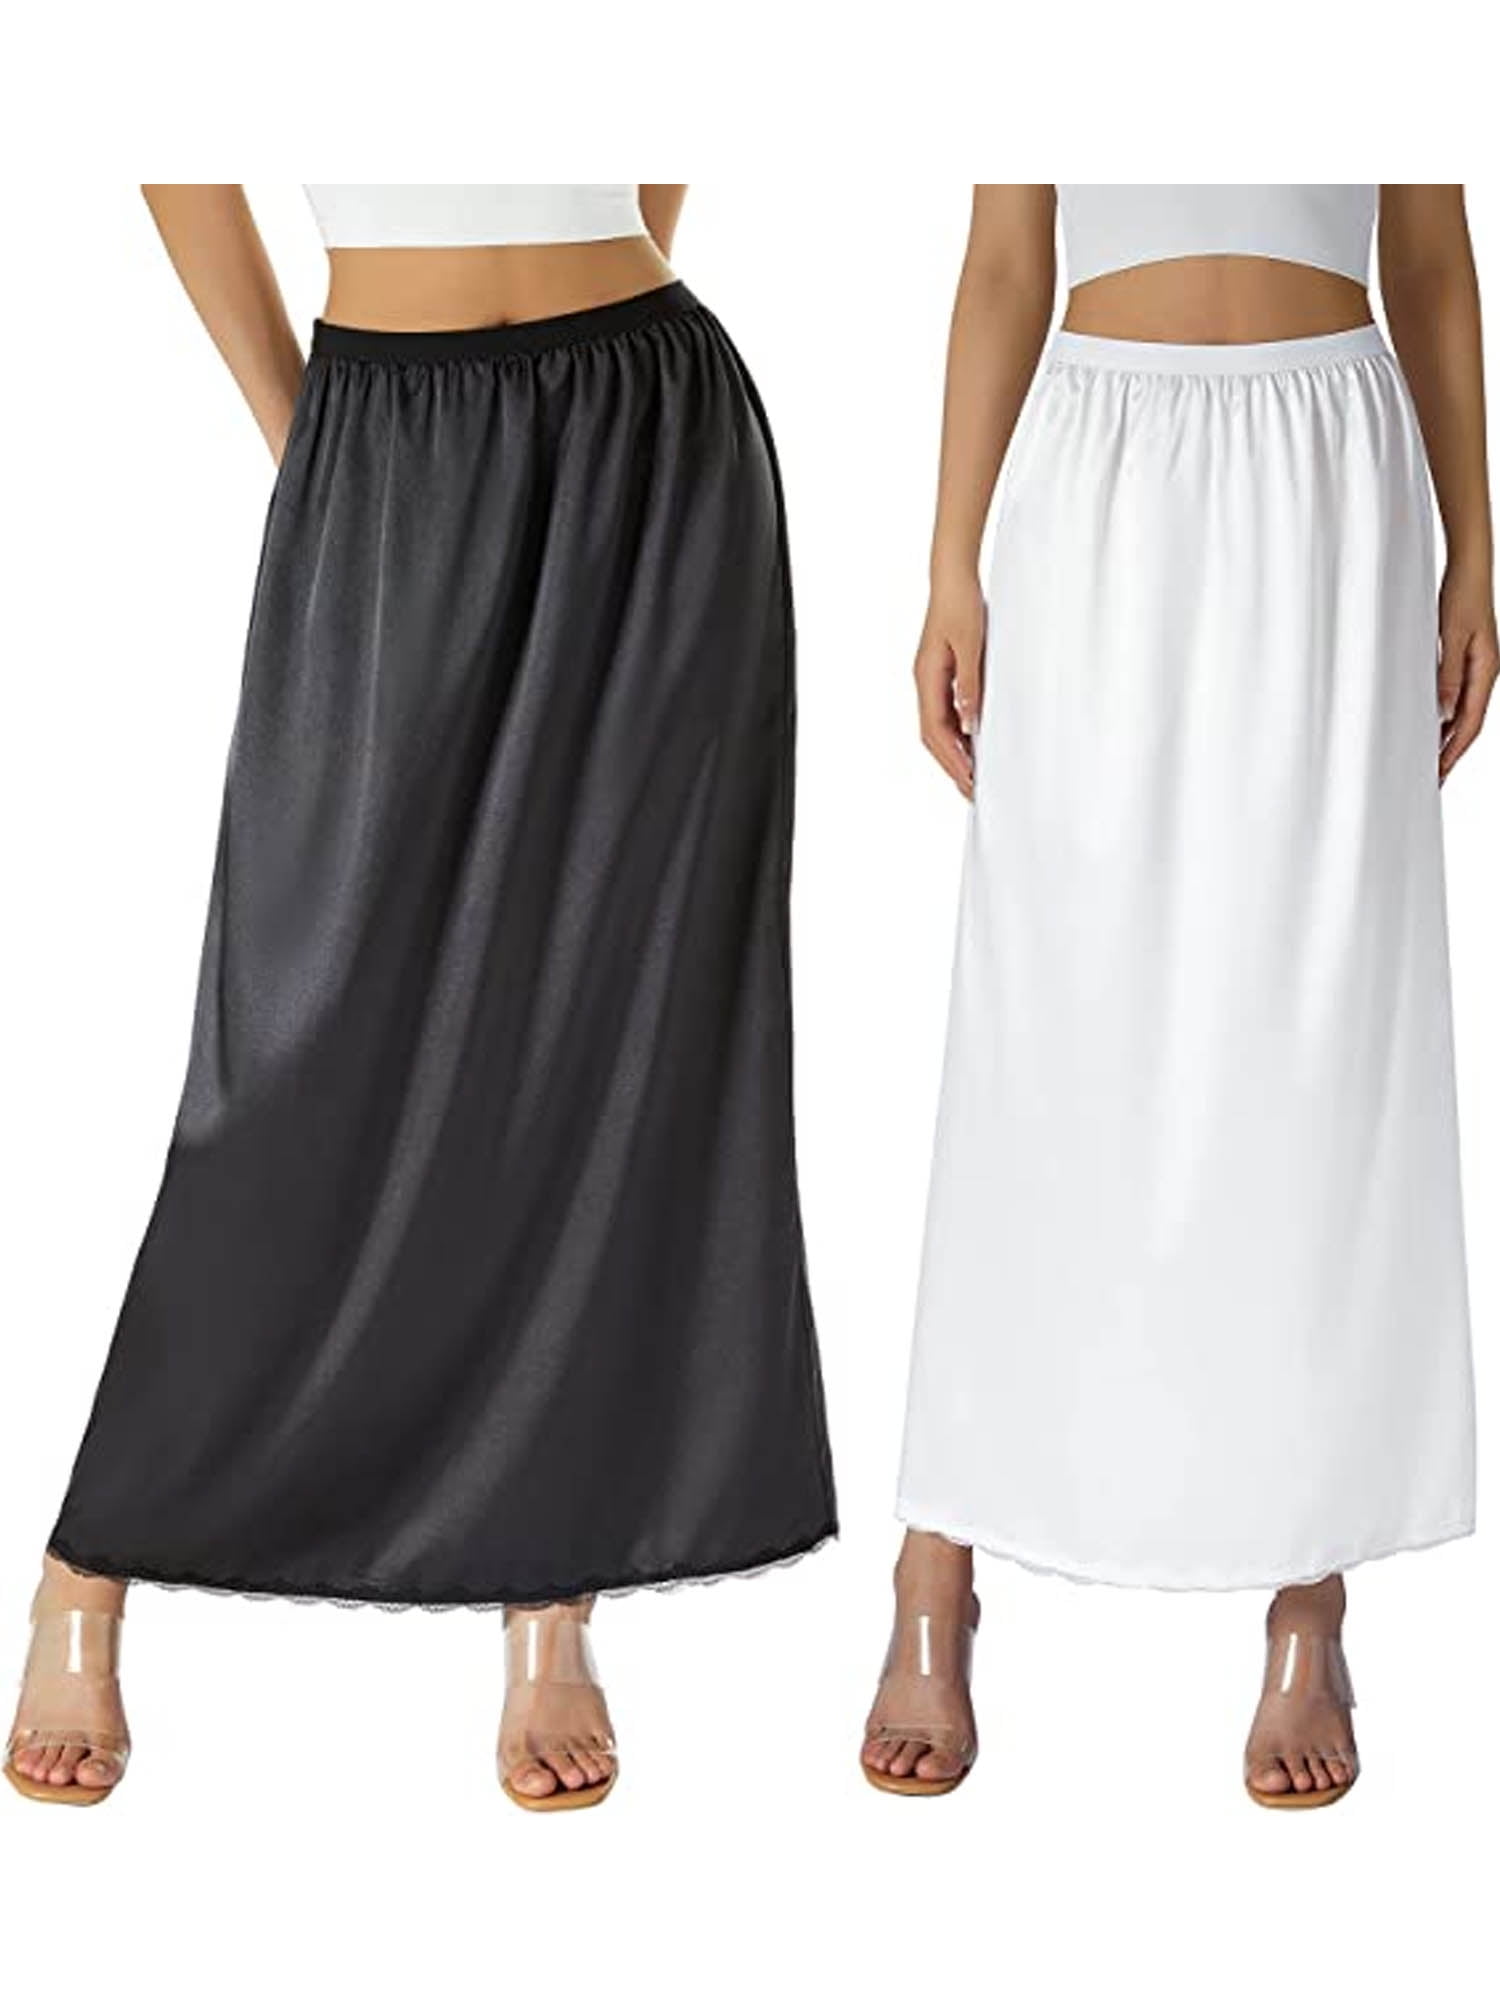 Satin Half Slip for Women Long Underskirt Dress Extender Lace Trim Maxi  Skirt for Under Dresses Slip L-XXXL